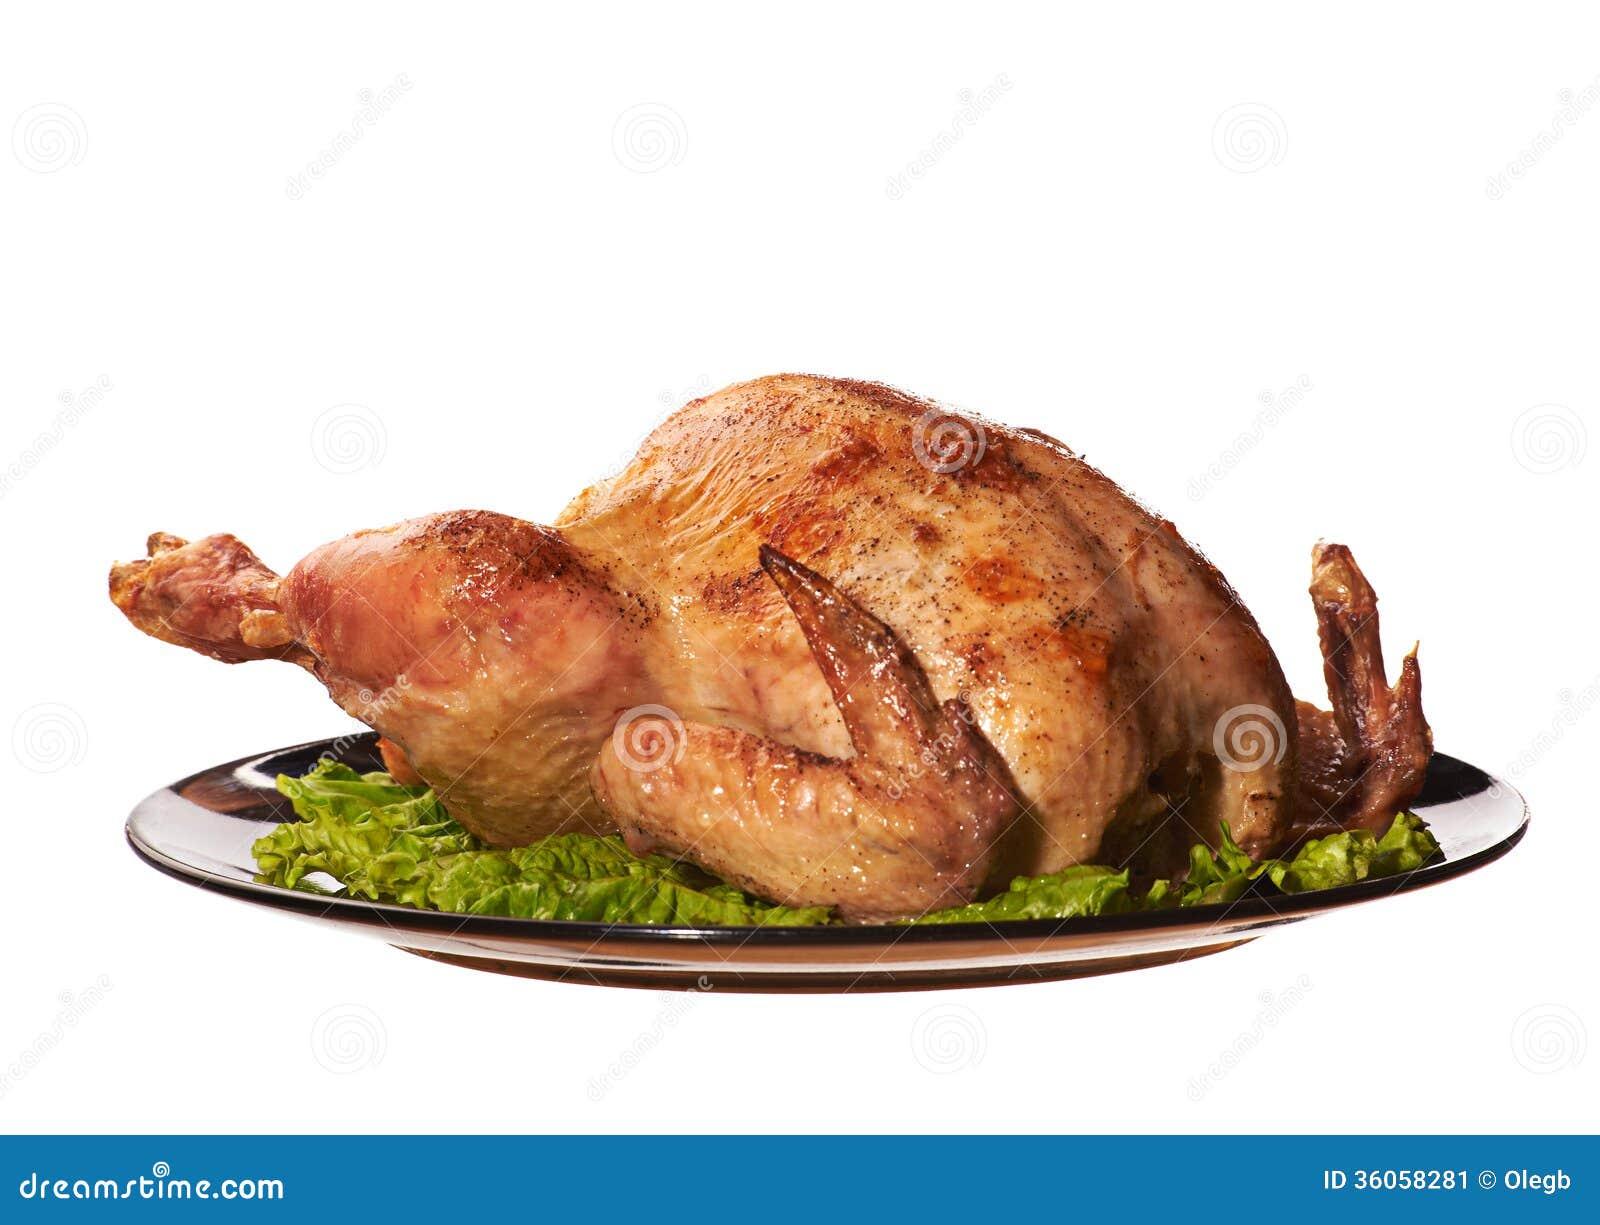 roast chicken clipart - photo #47